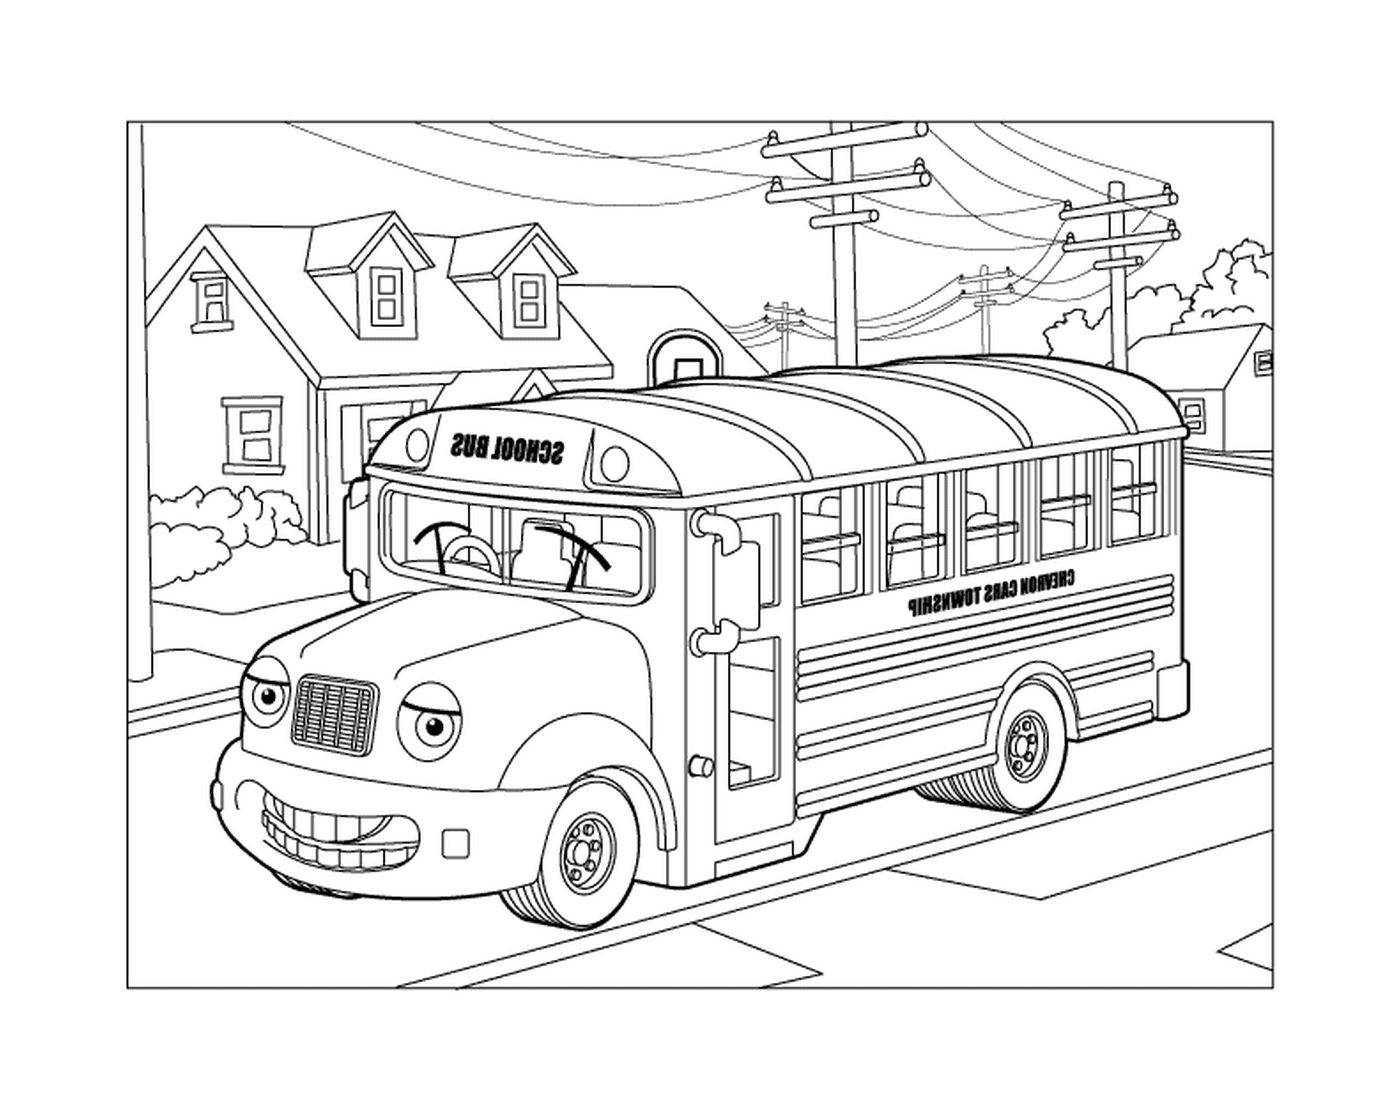   Un bus scolaire qui roule dans la rue 